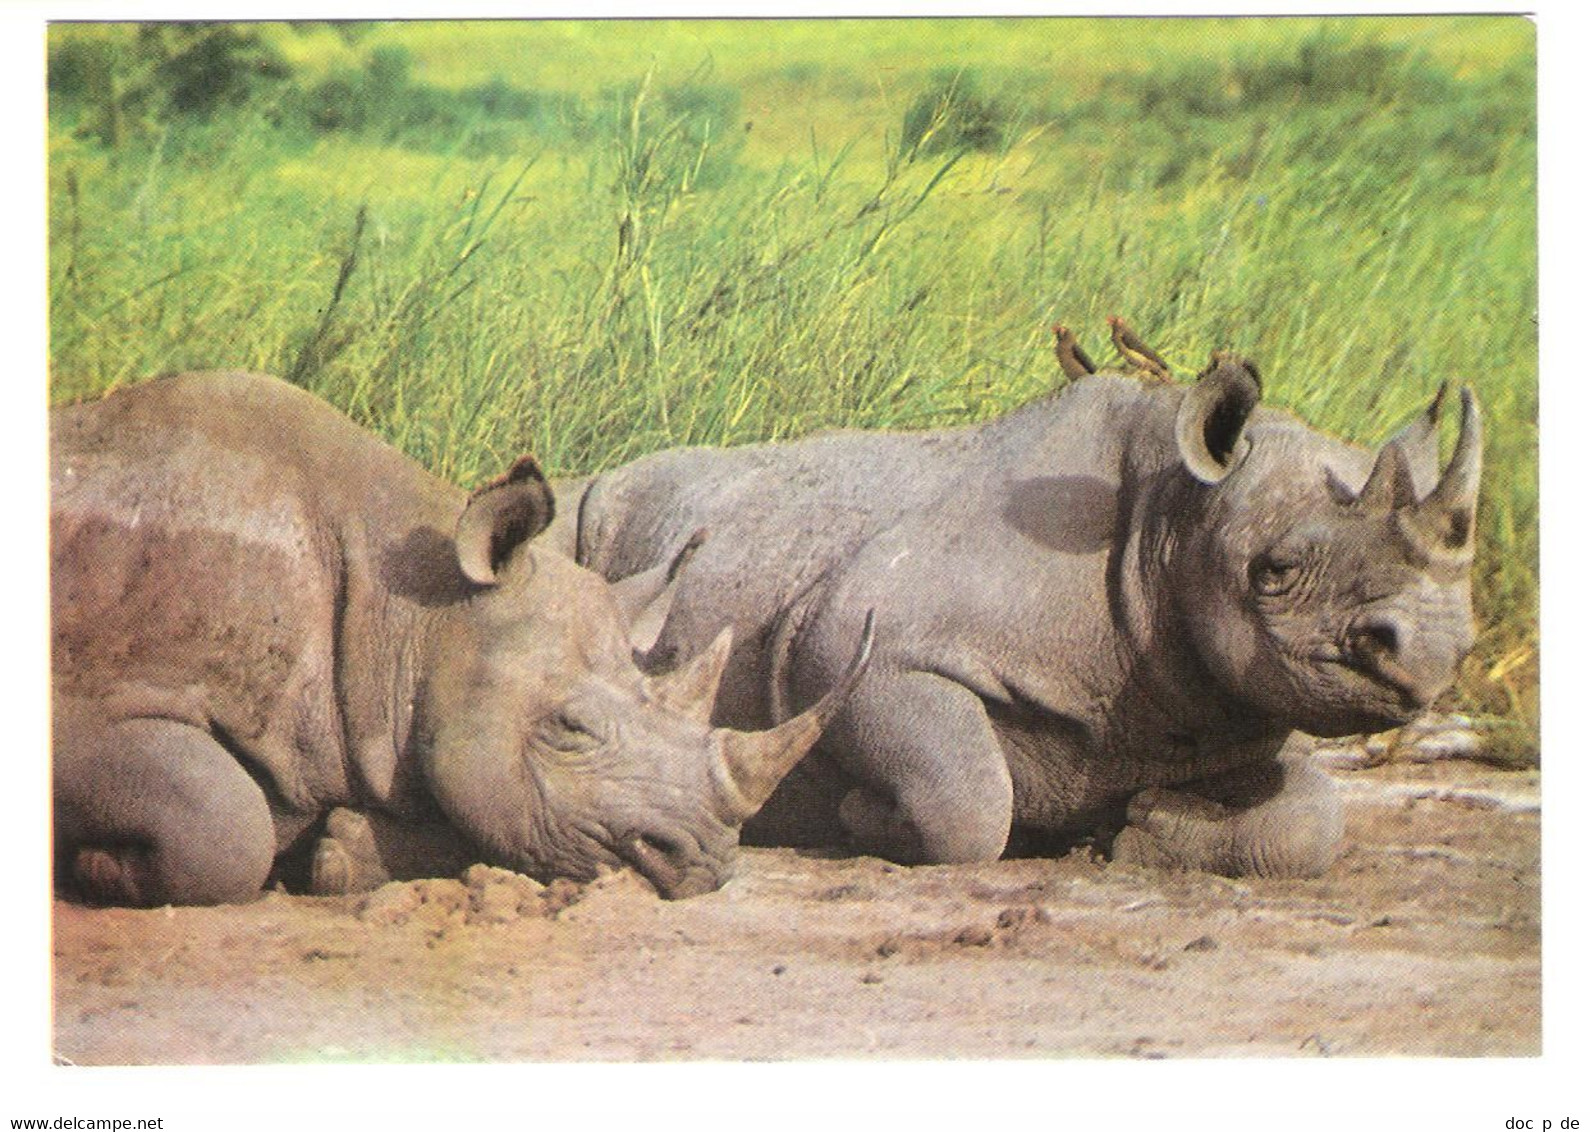 Africa - Nashorn - Rhinoceros - Rhinoceros